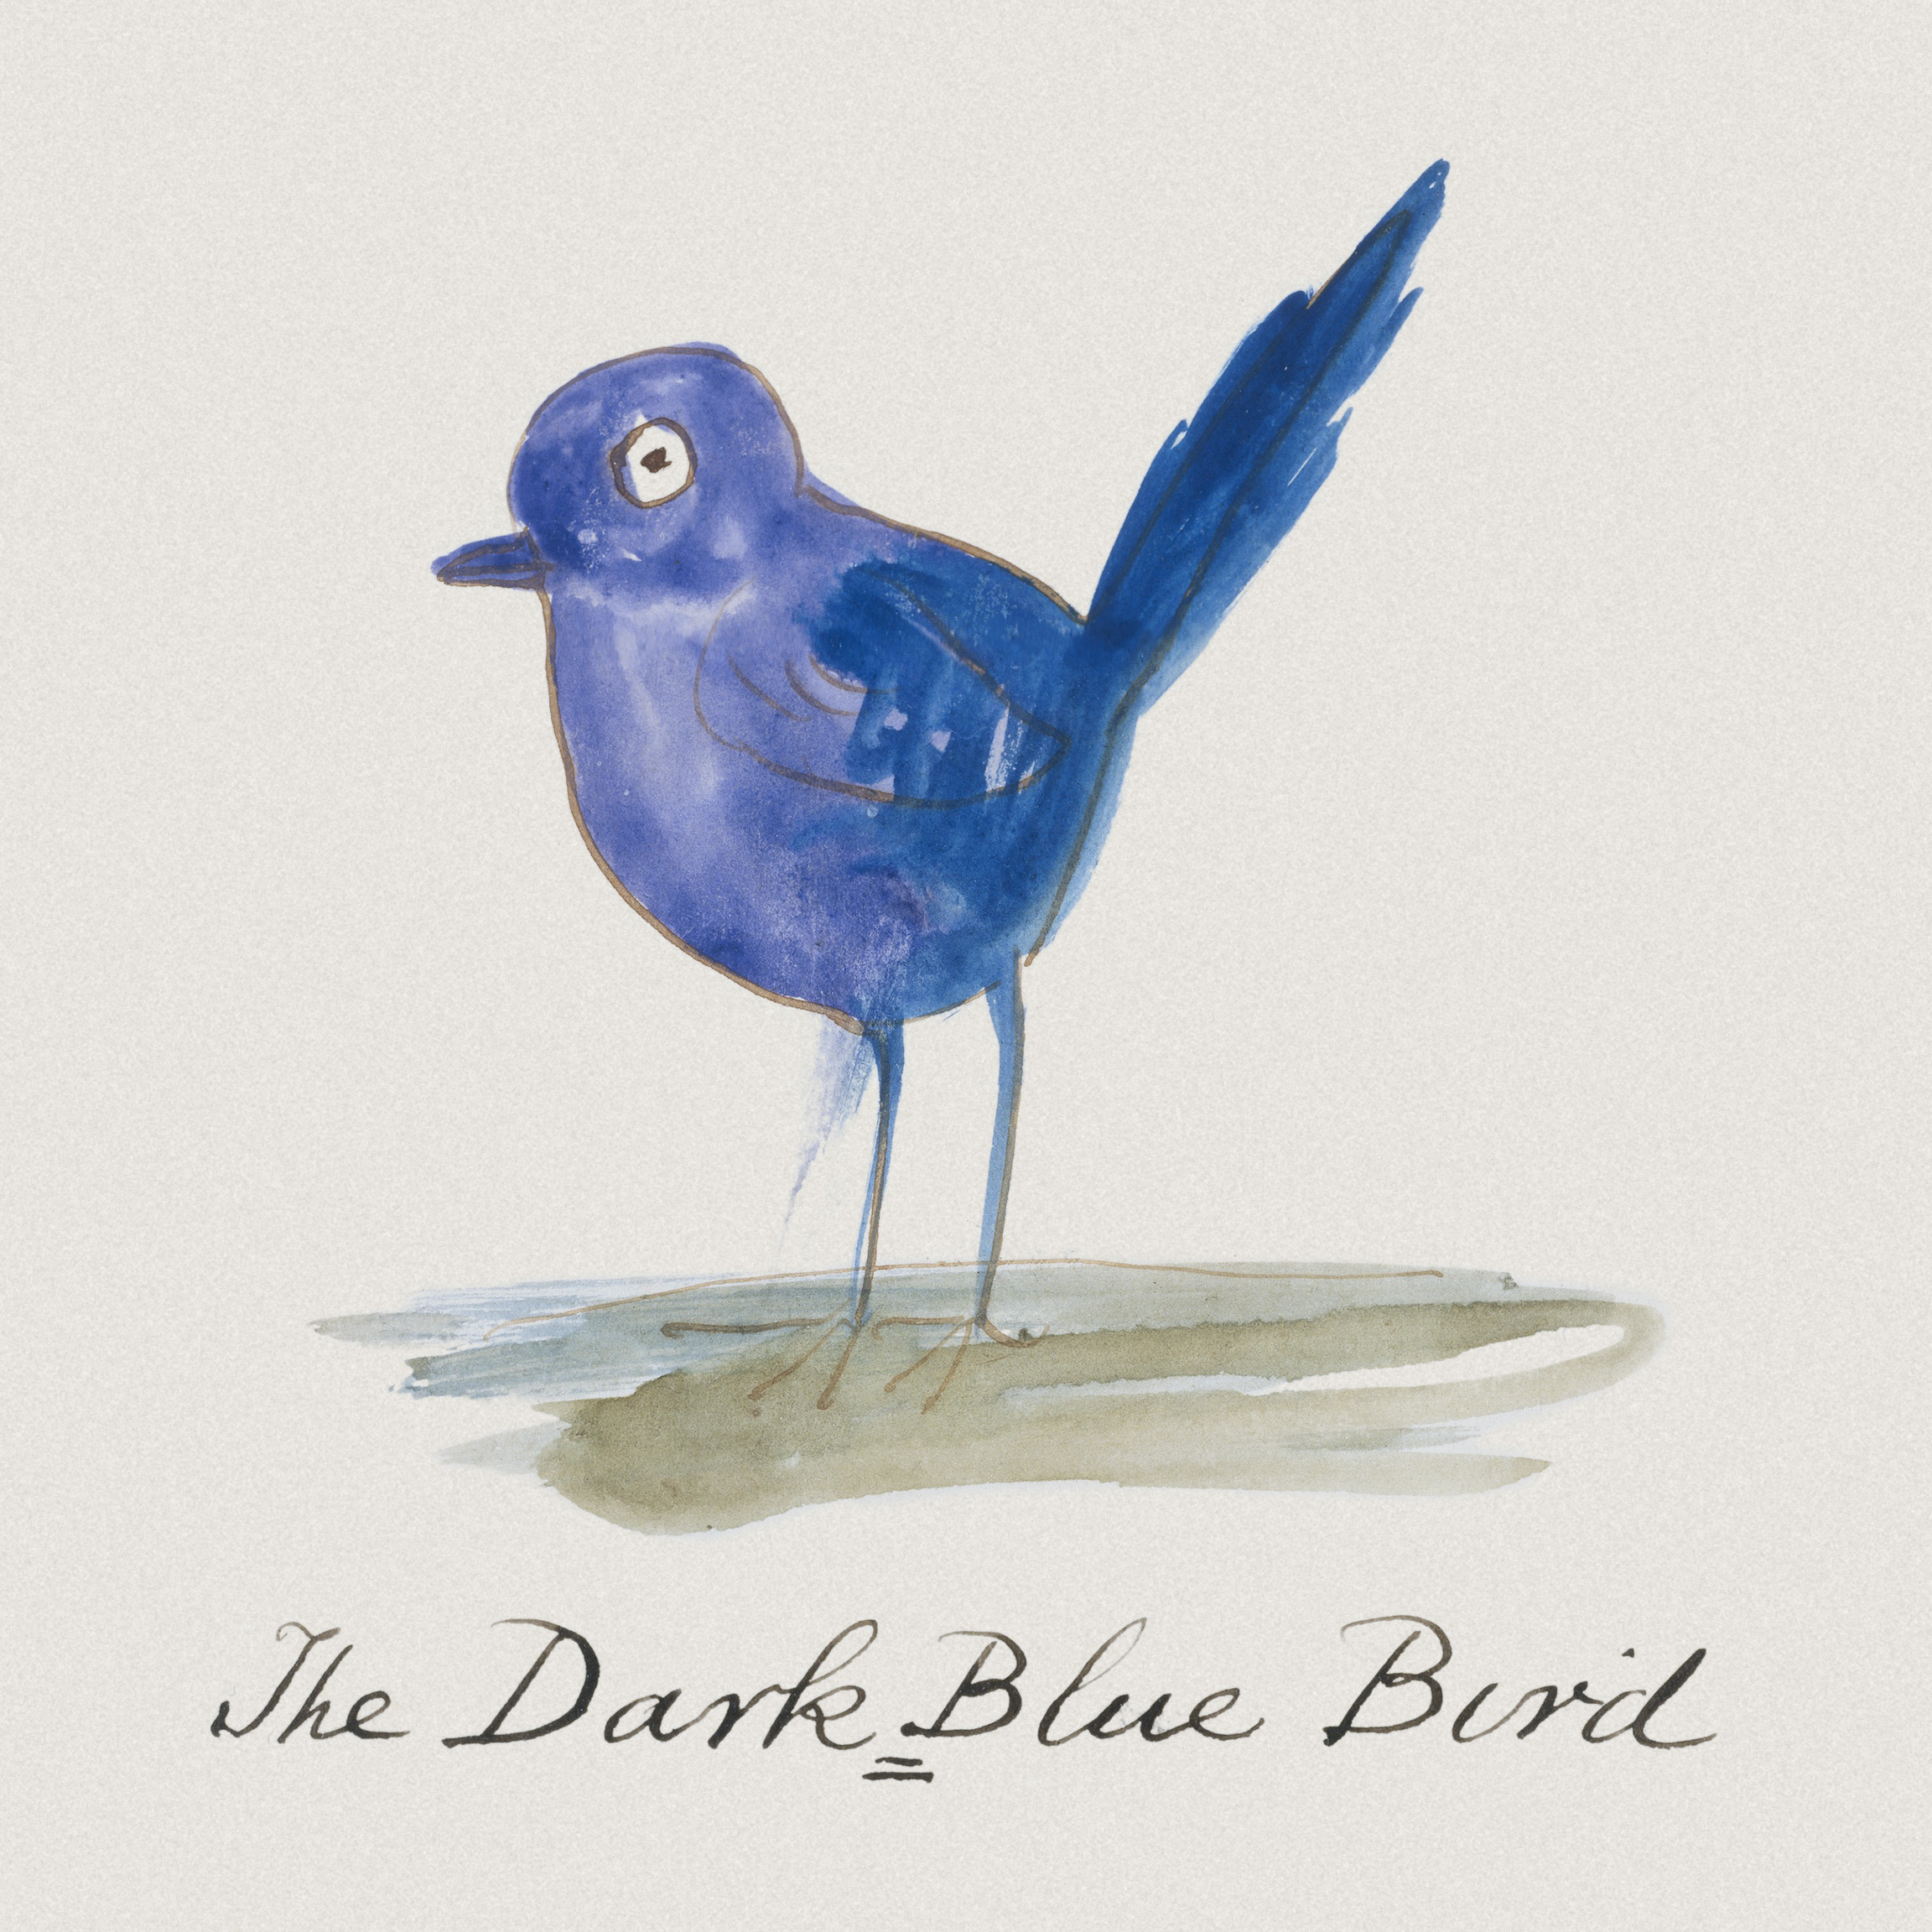 The Dark Blue Bird